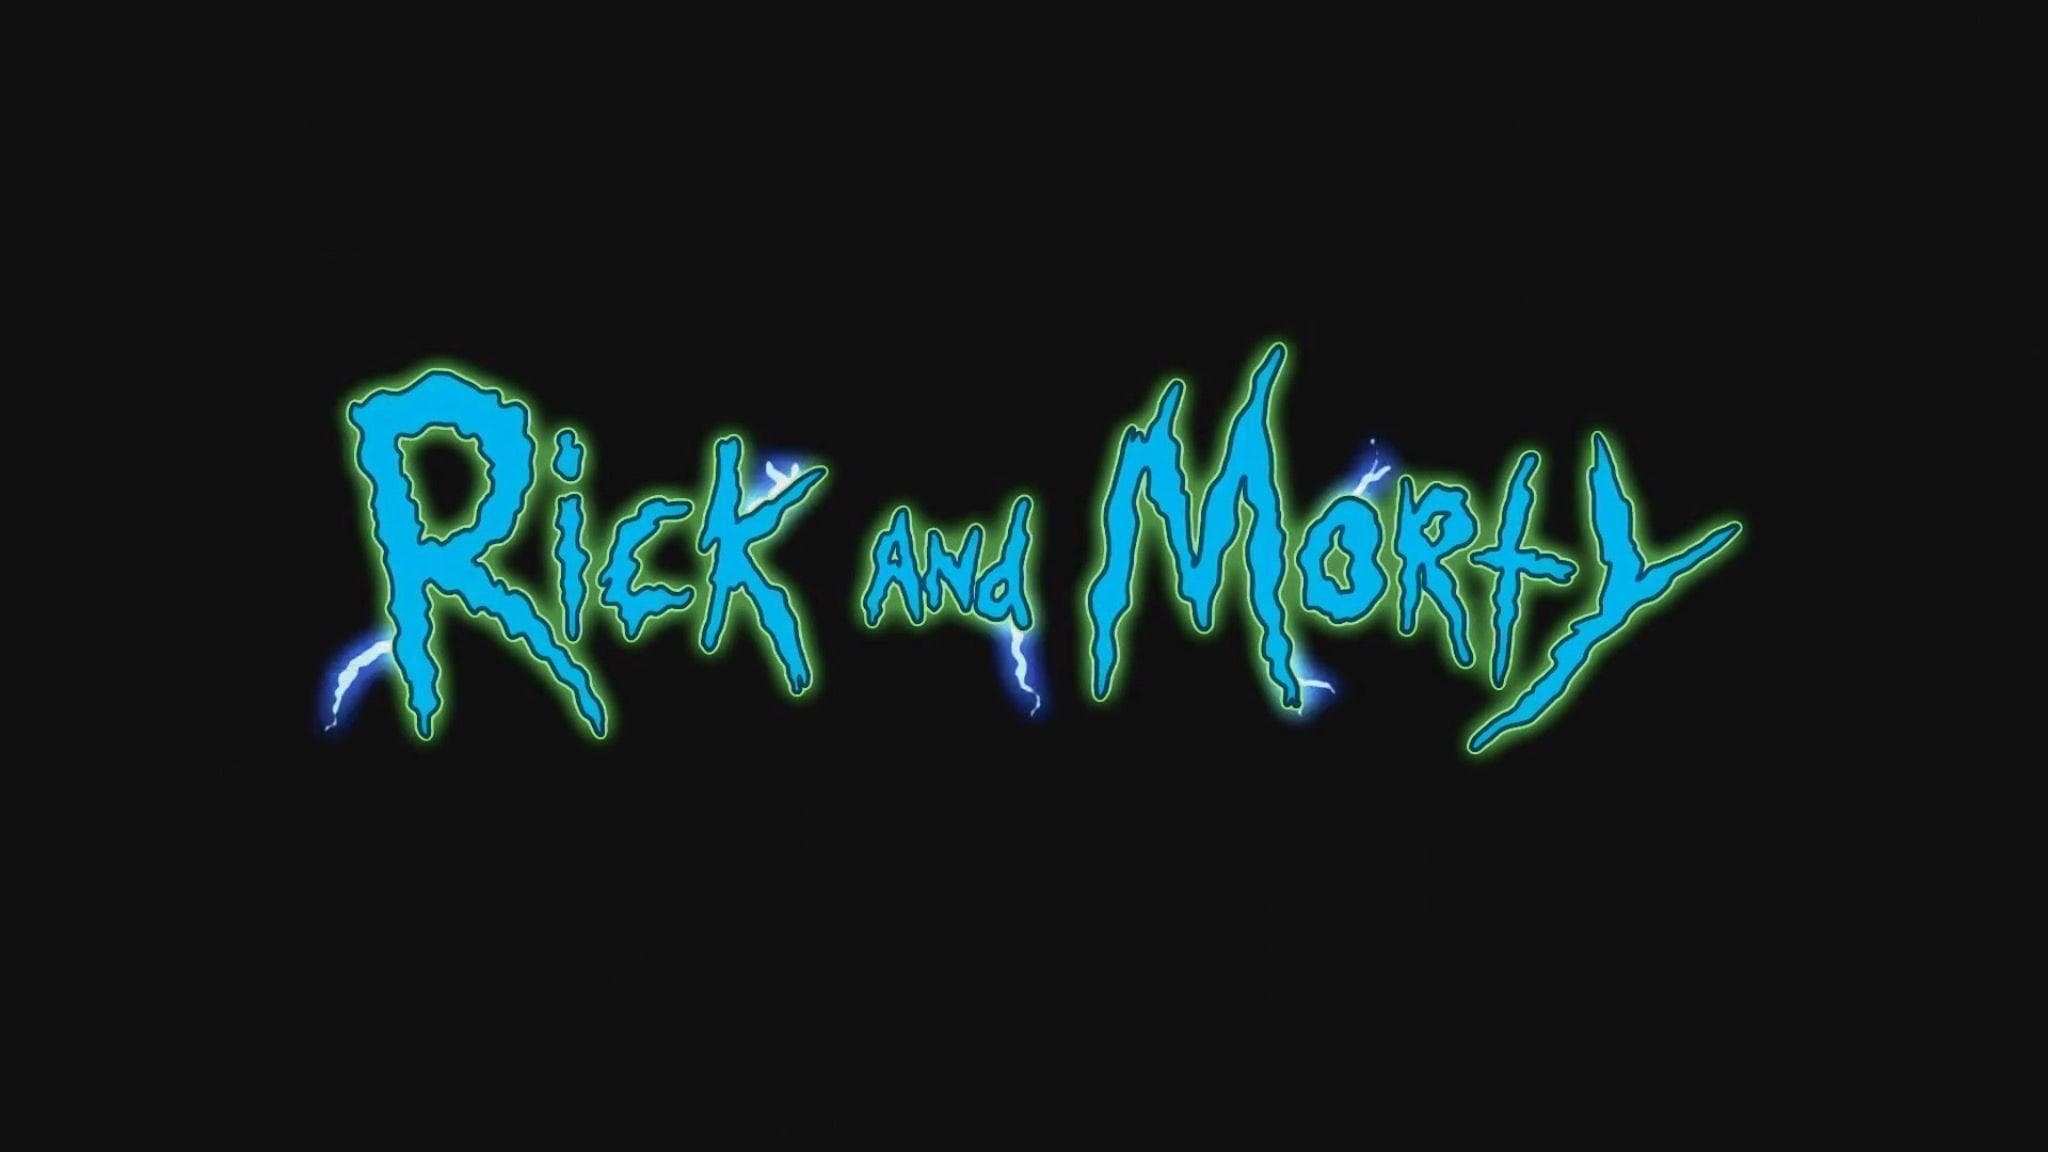 Rick és Morty